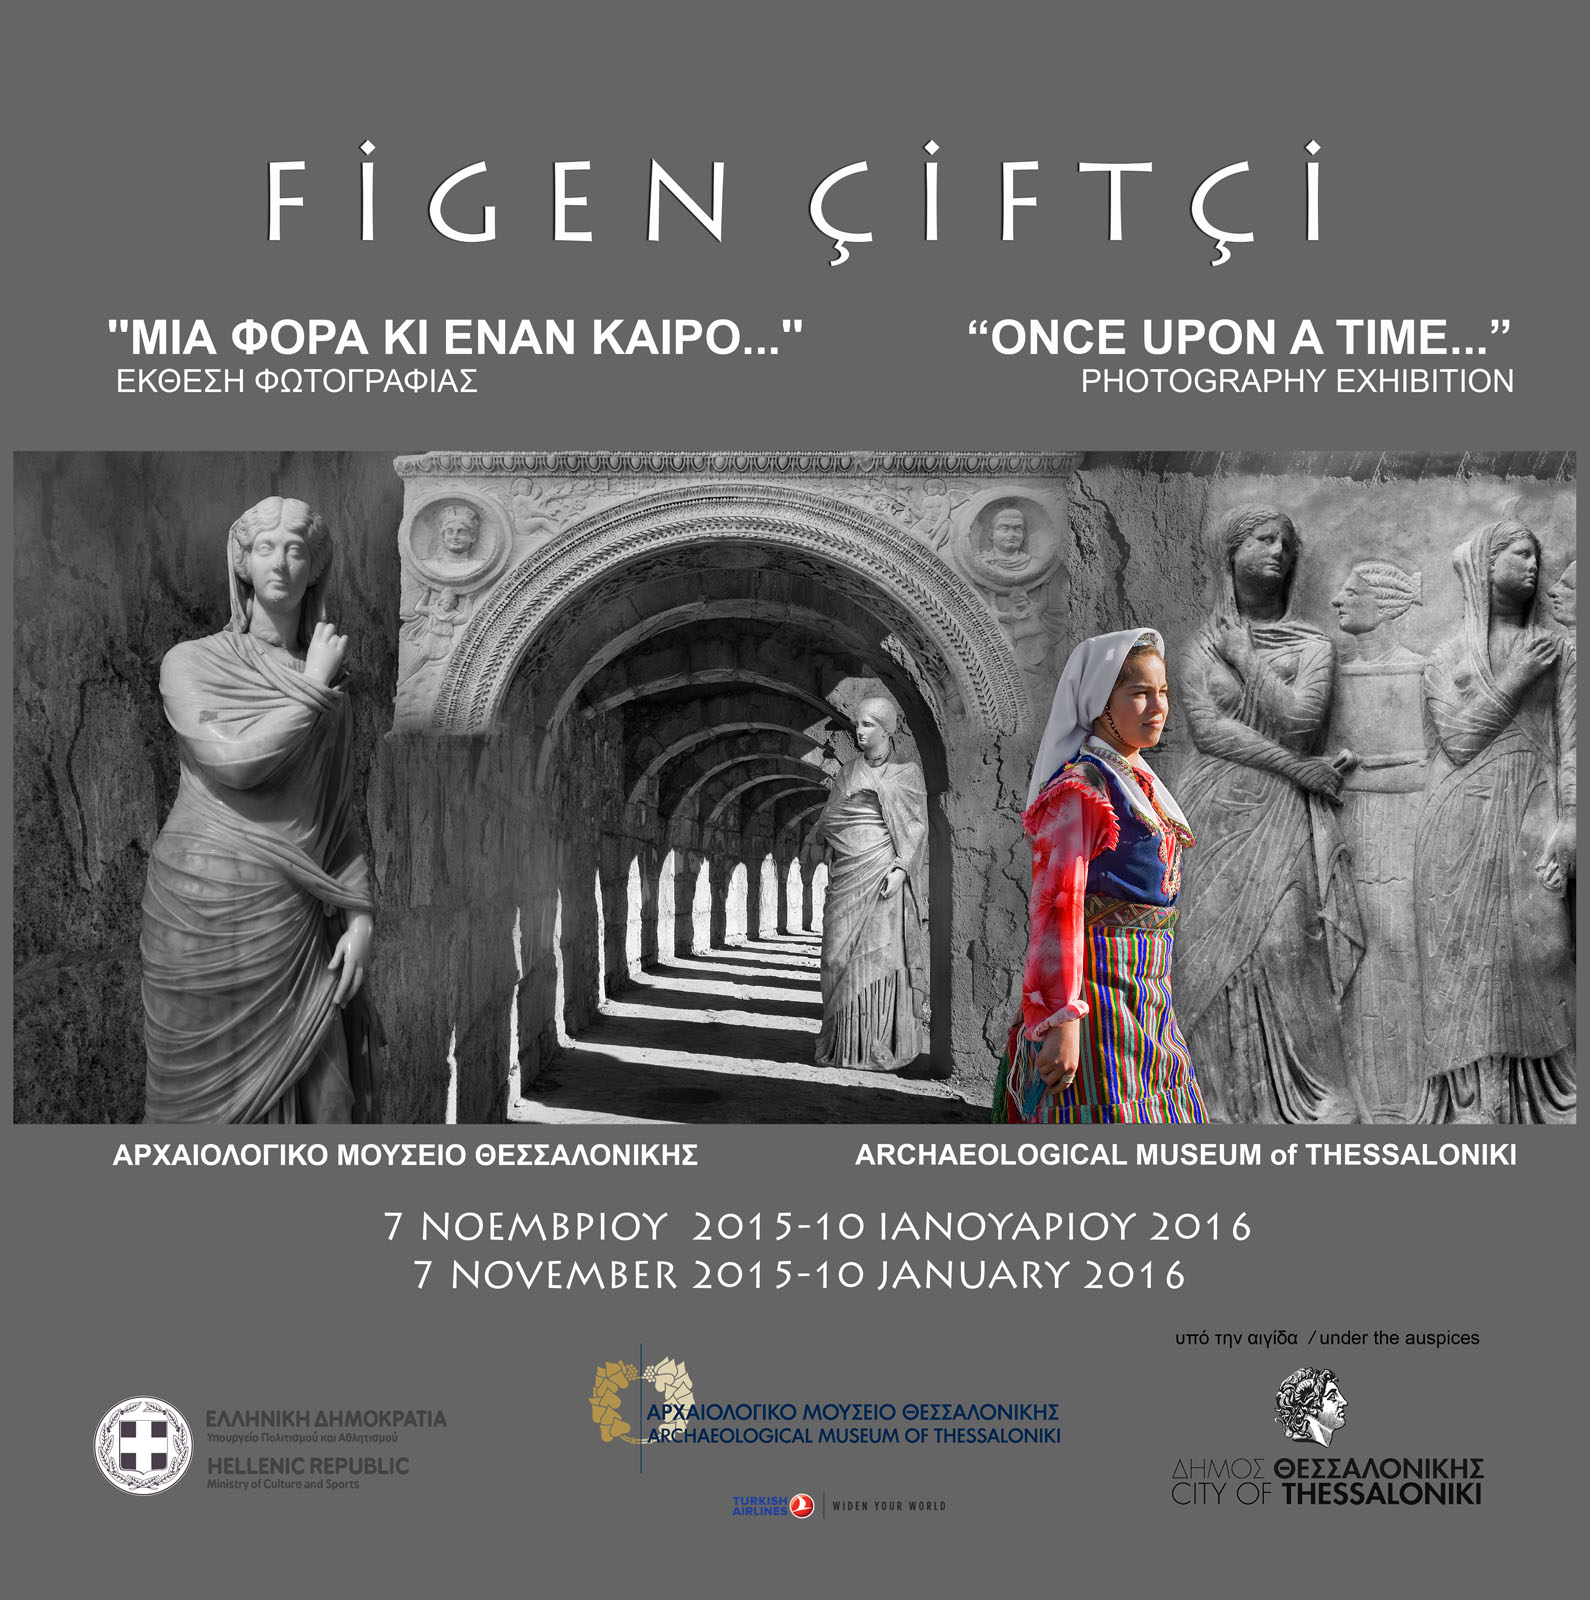 Μια φορά και έναν καιρό… – Once Upon a Time…: έκθεση της Figen Çiftçi στο Αρχαιολογικό Μουσείο Θεσσαλονίκης